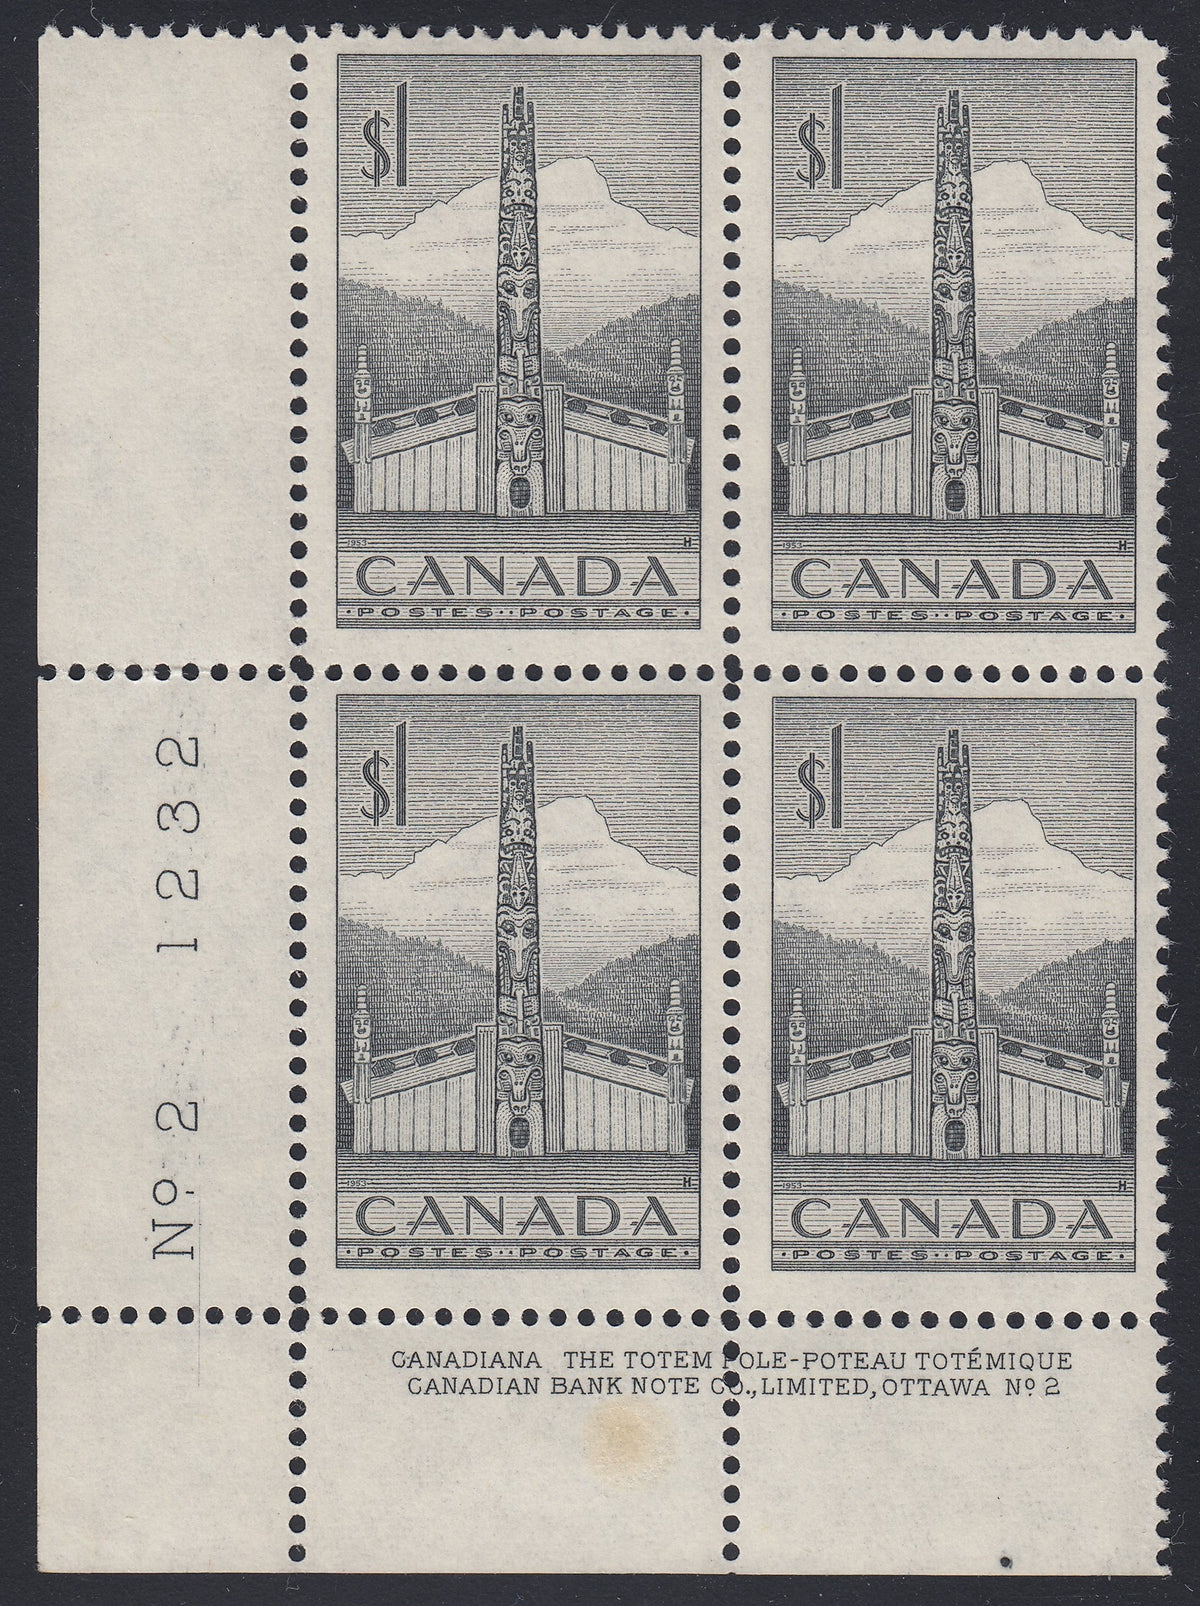 0321CA1807 - Canada #321 Plate Block